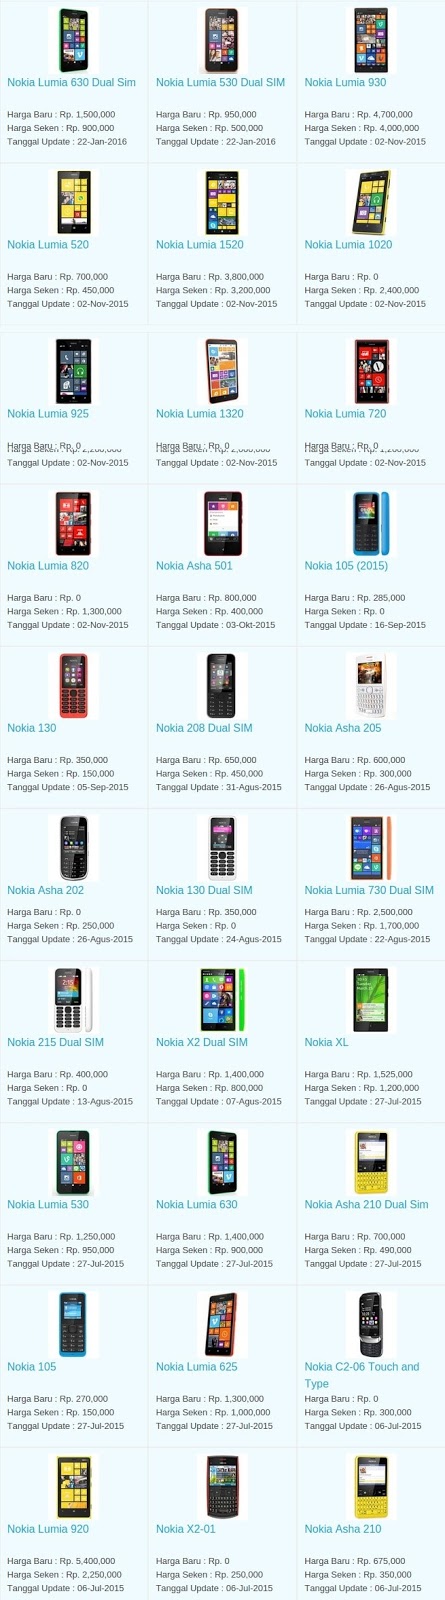 Daftar Harga Hp Terbaru Nokia Juni 2016